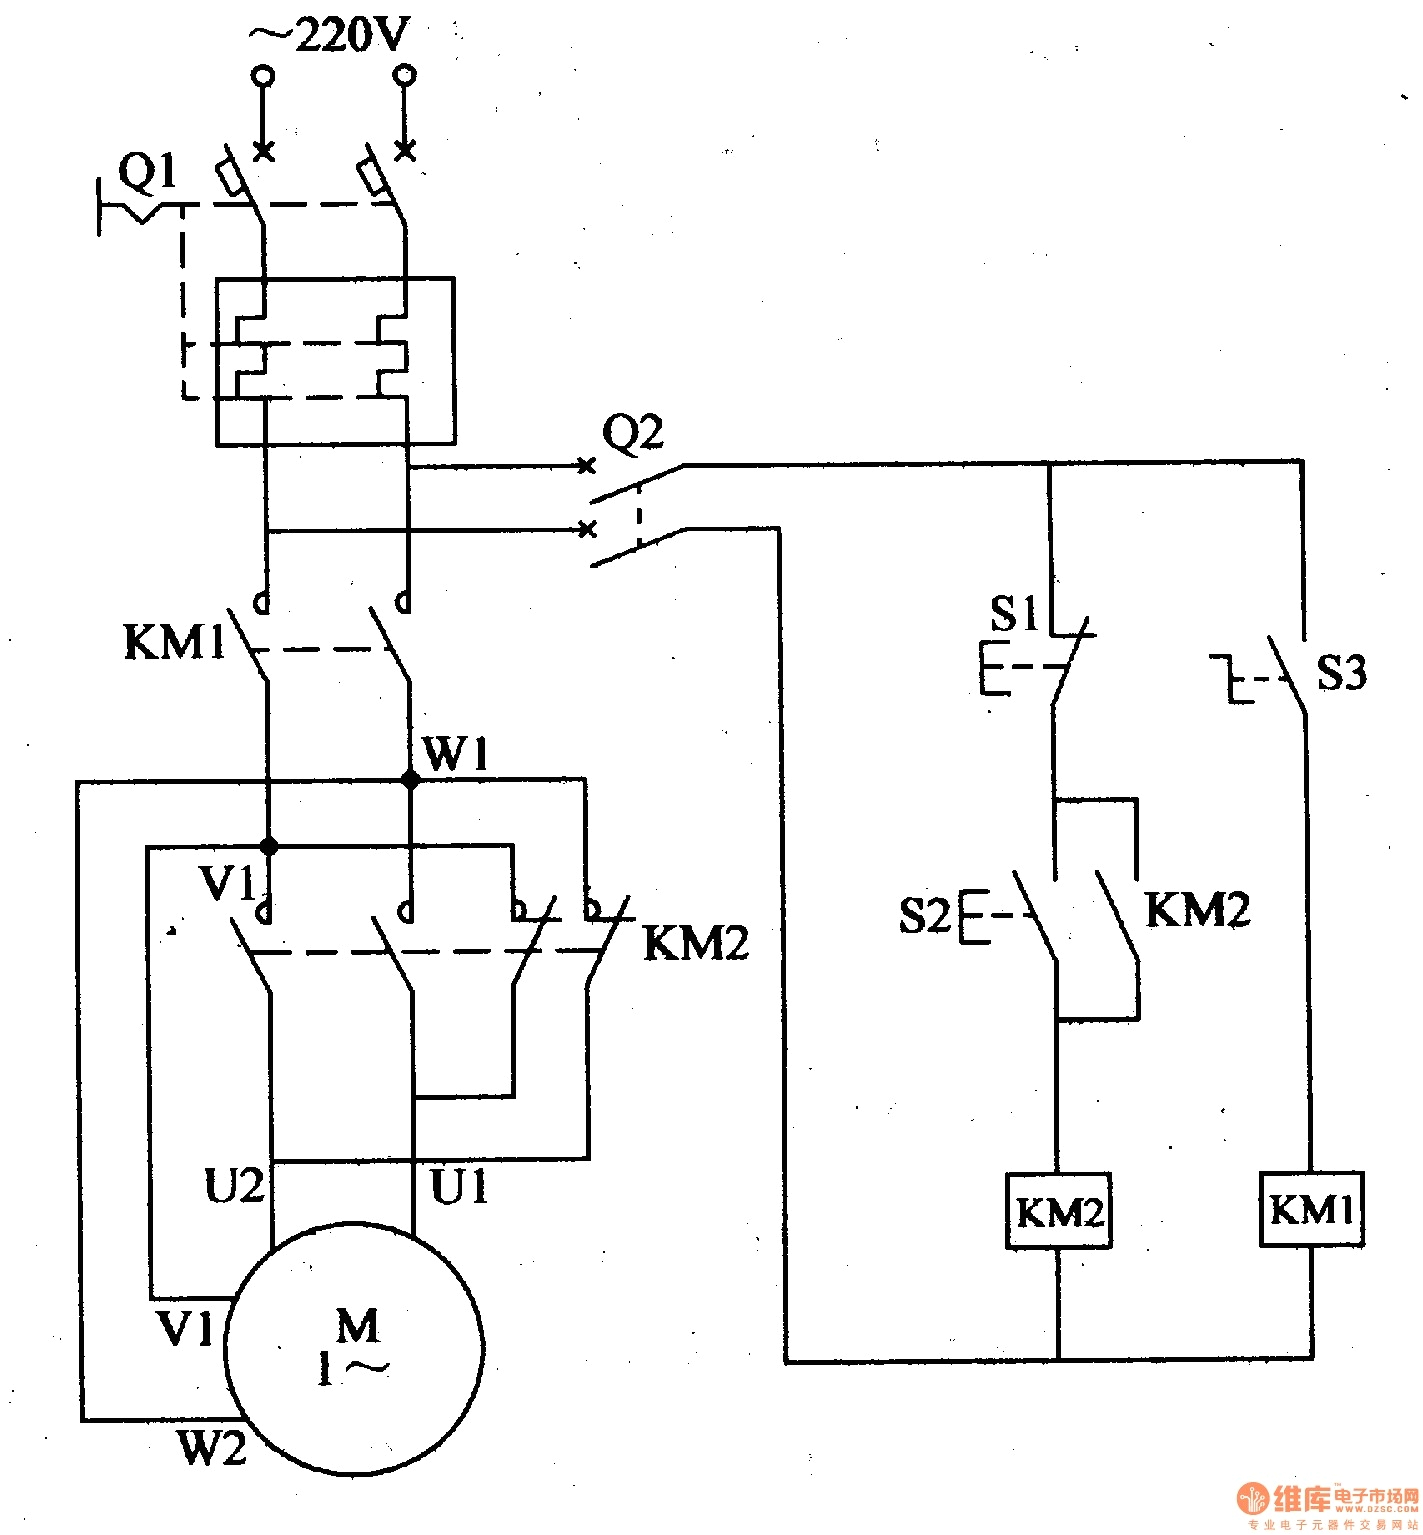 wiring schematic 220 110 volt